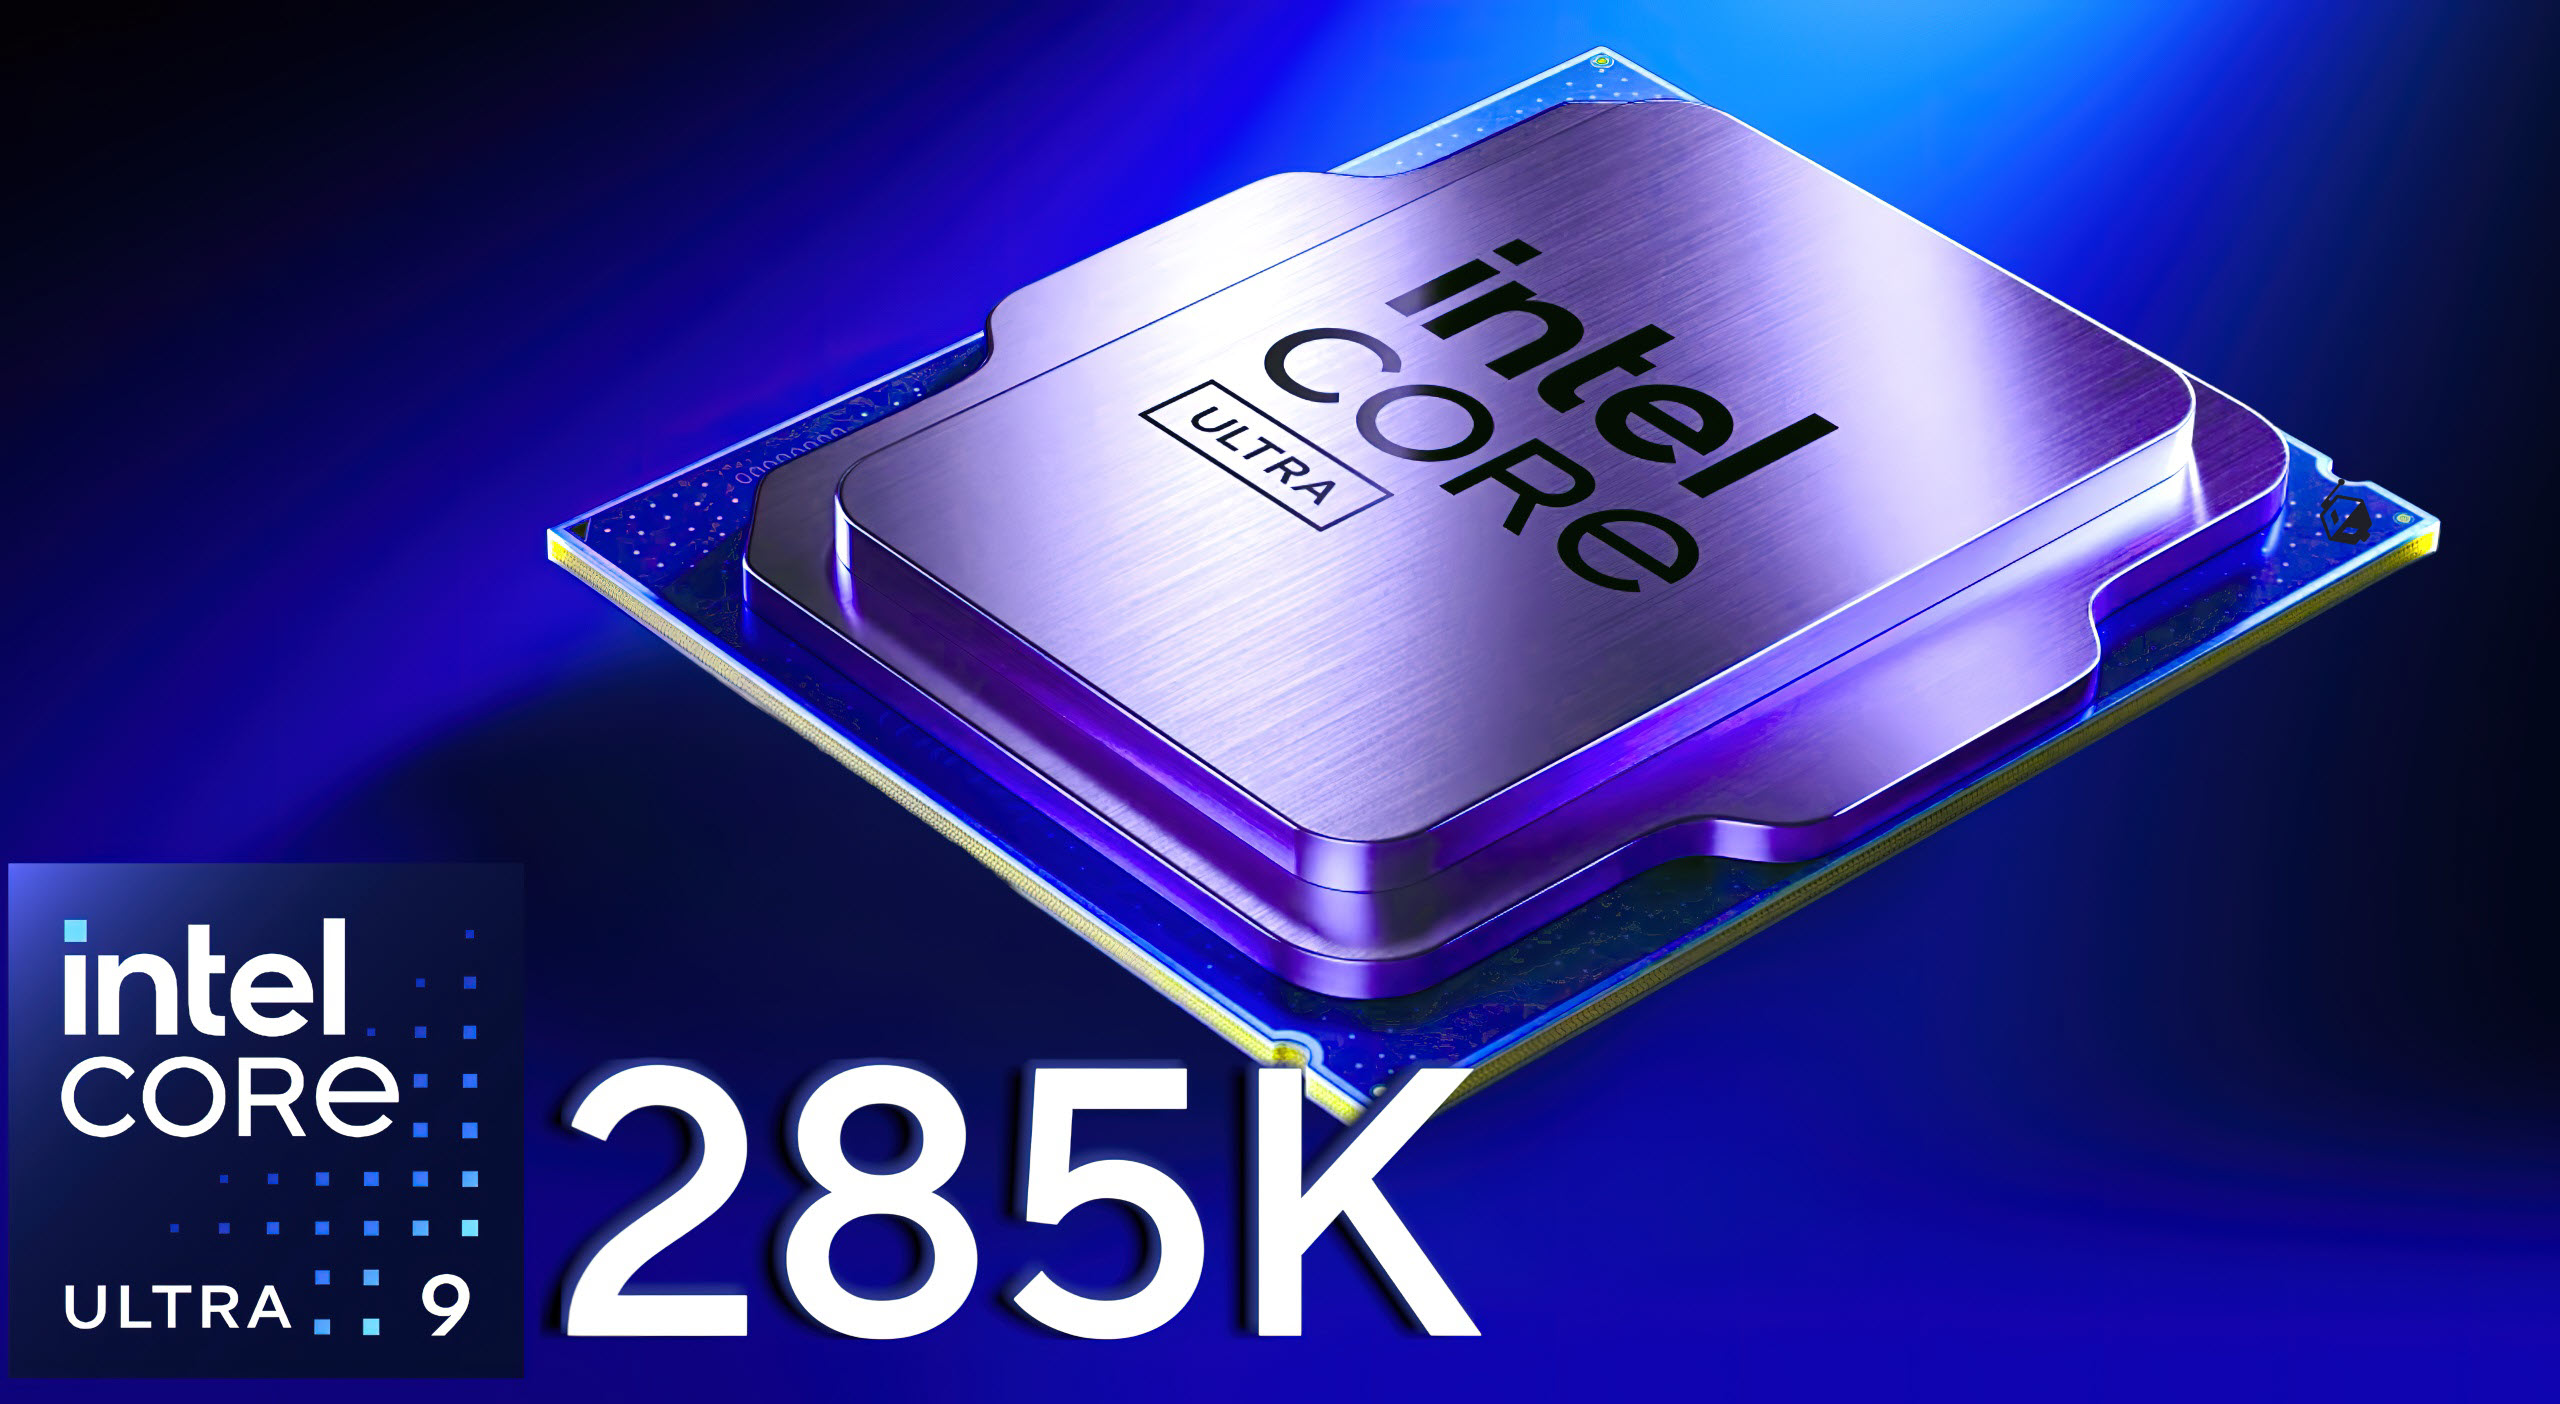 پردازنده پرچمدار Intel Core Ultra 9 285K Arrow Lake-S تا 5.7 گیگاهرتز و 5.4 گیگاهرتز در تمام هسته های P